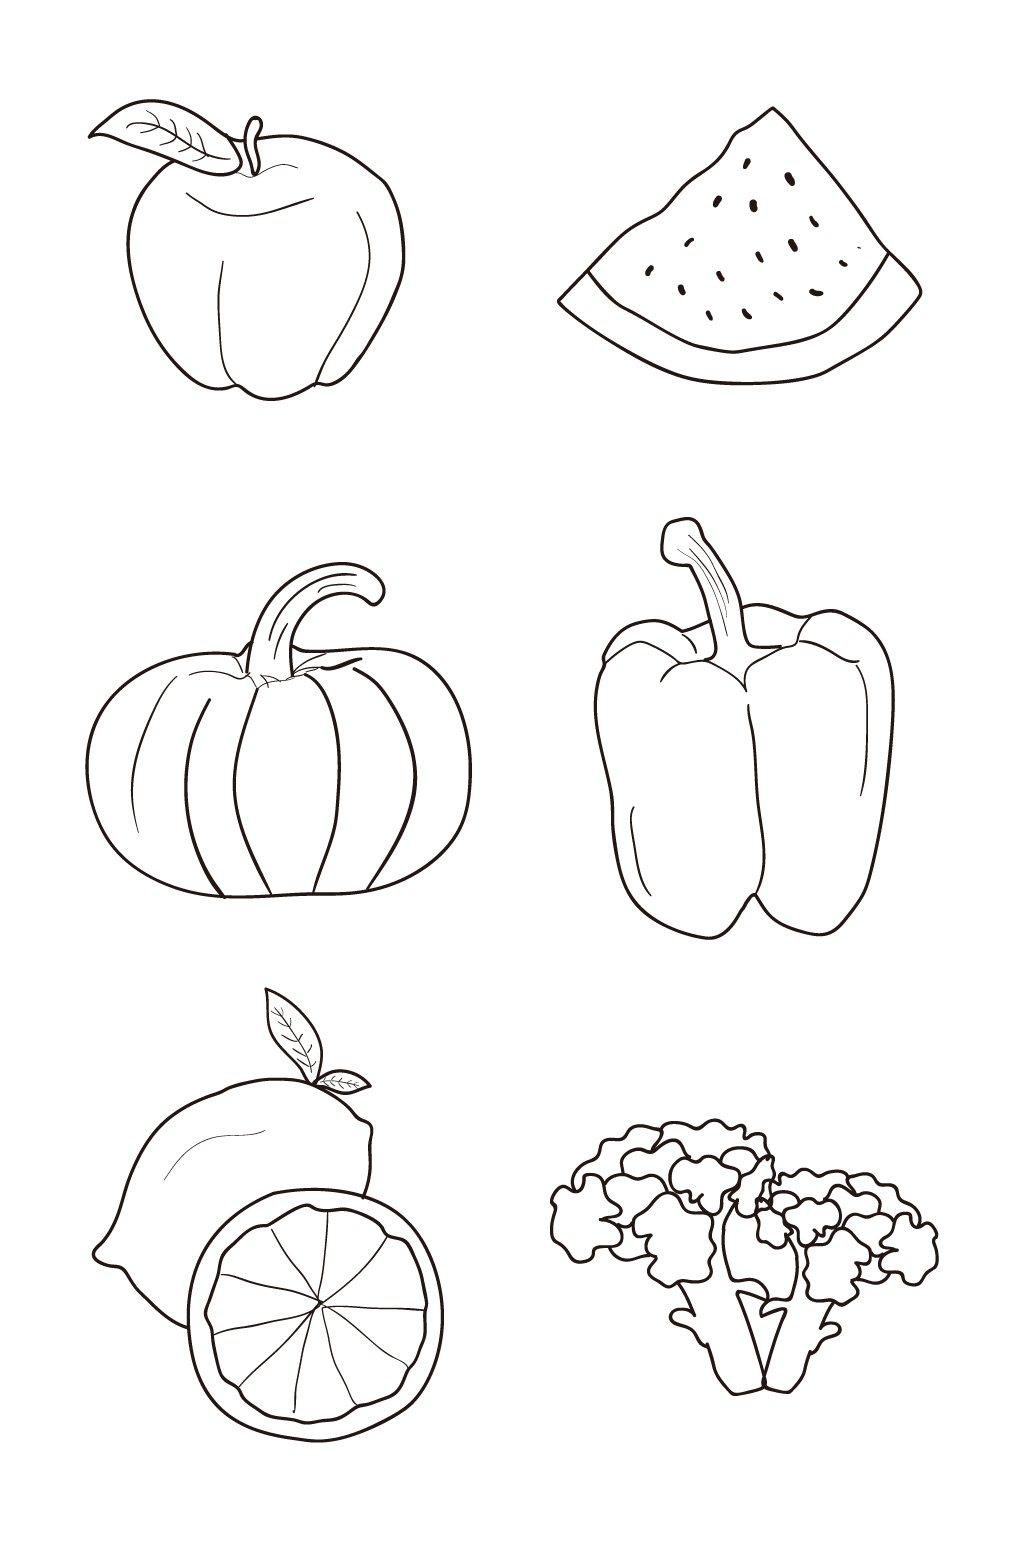 水果线描画简单图片